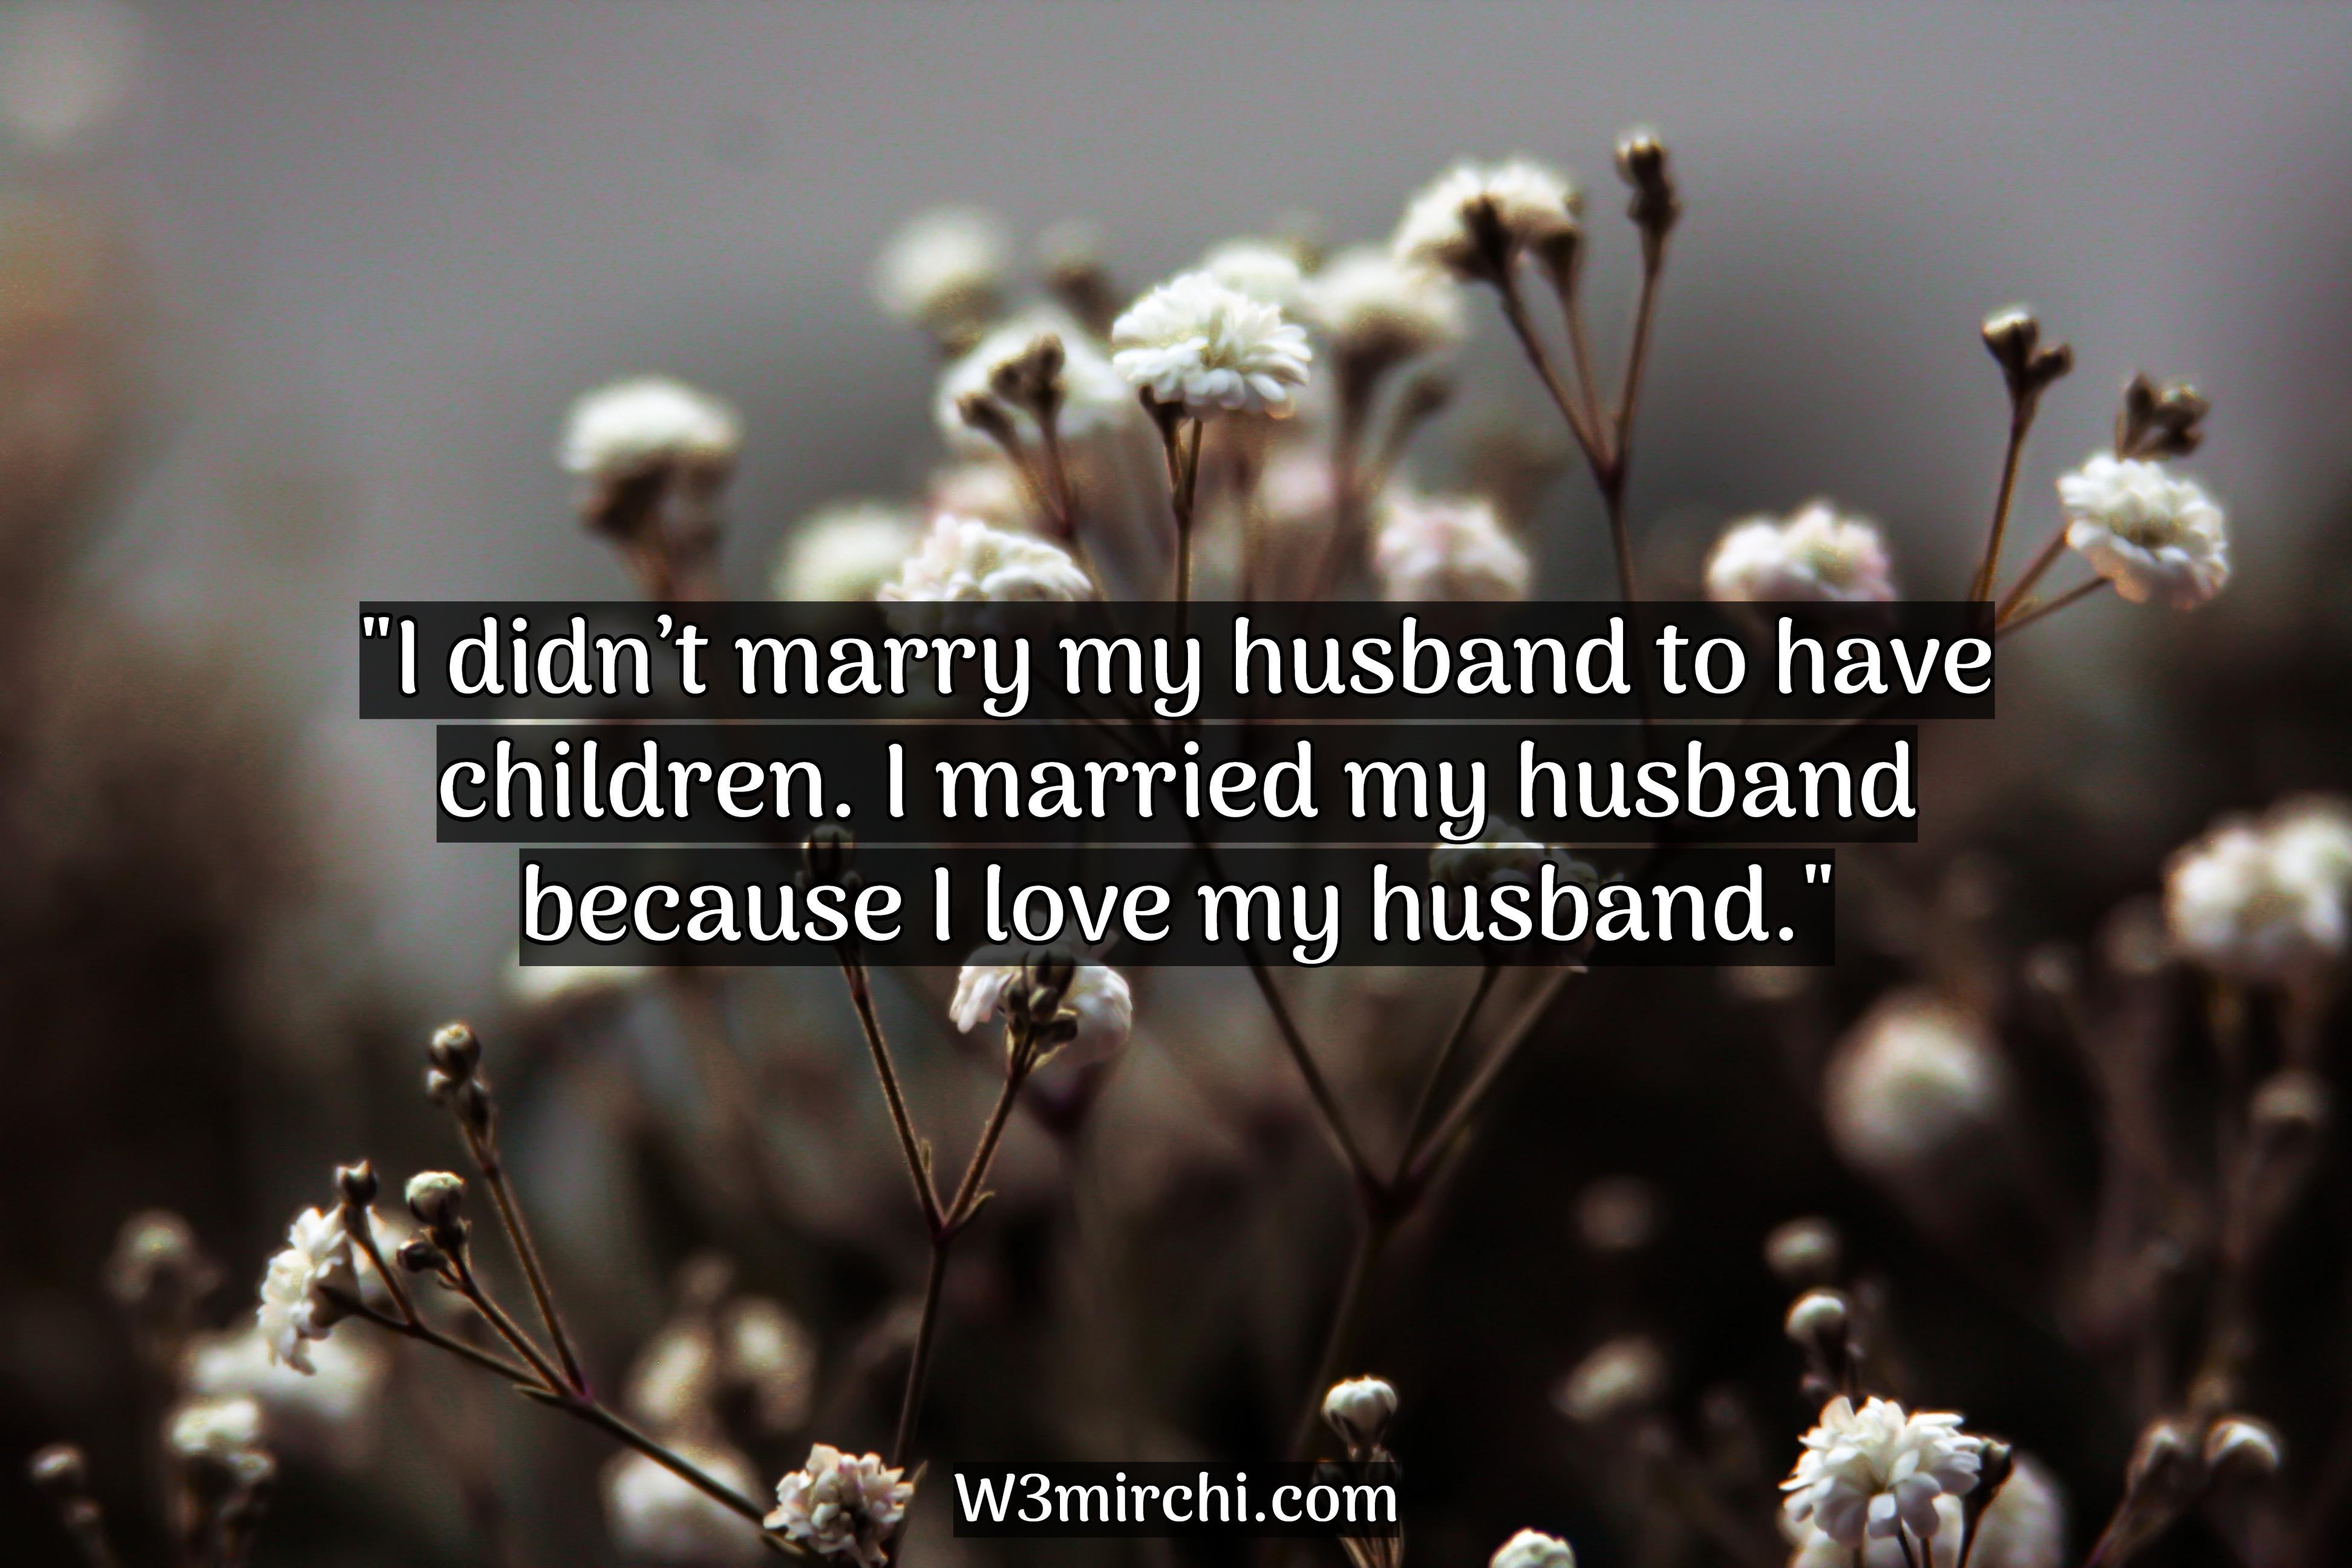 I love my husband."